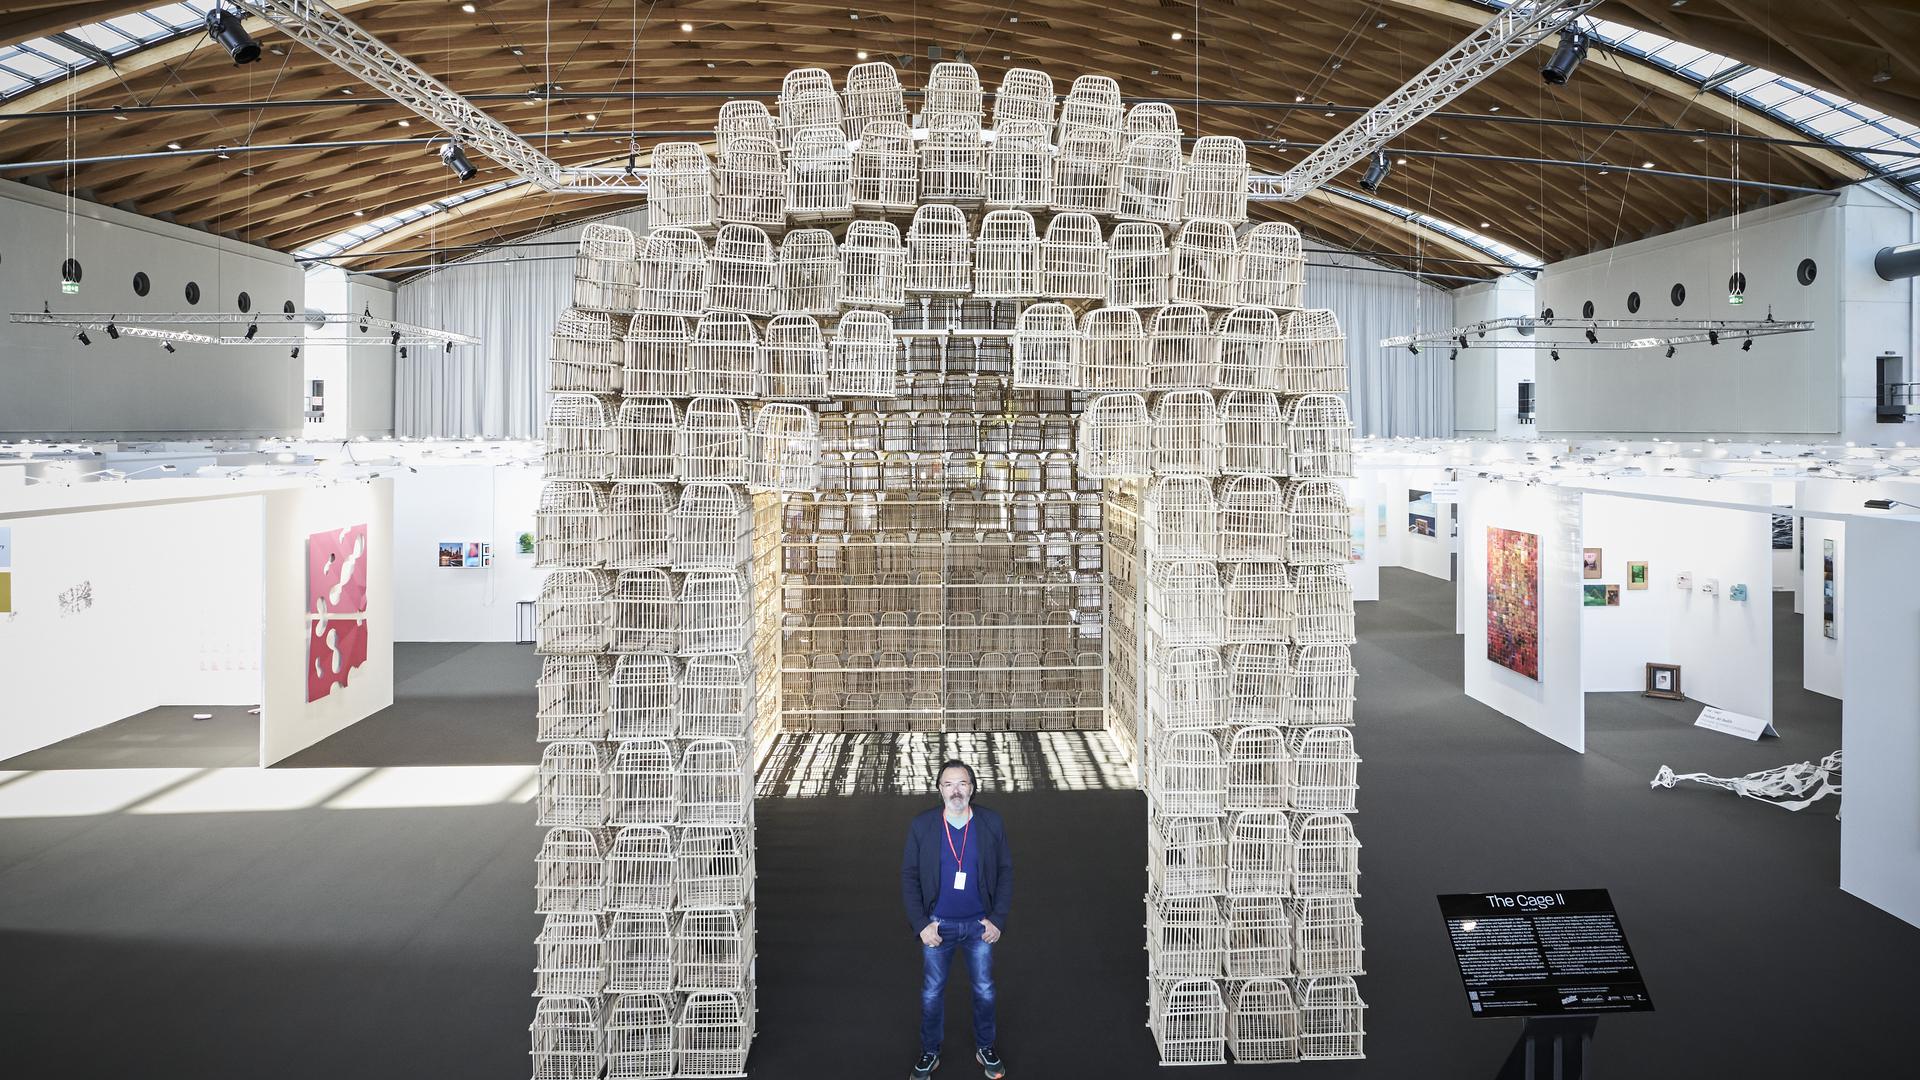 Der in Karlsruhe lebende deutsch-irakische Künstler Fahar Al-Salih hat aus 600 Holz-Vogelkäfigen seine Installation „The Cage“ geschaffen.